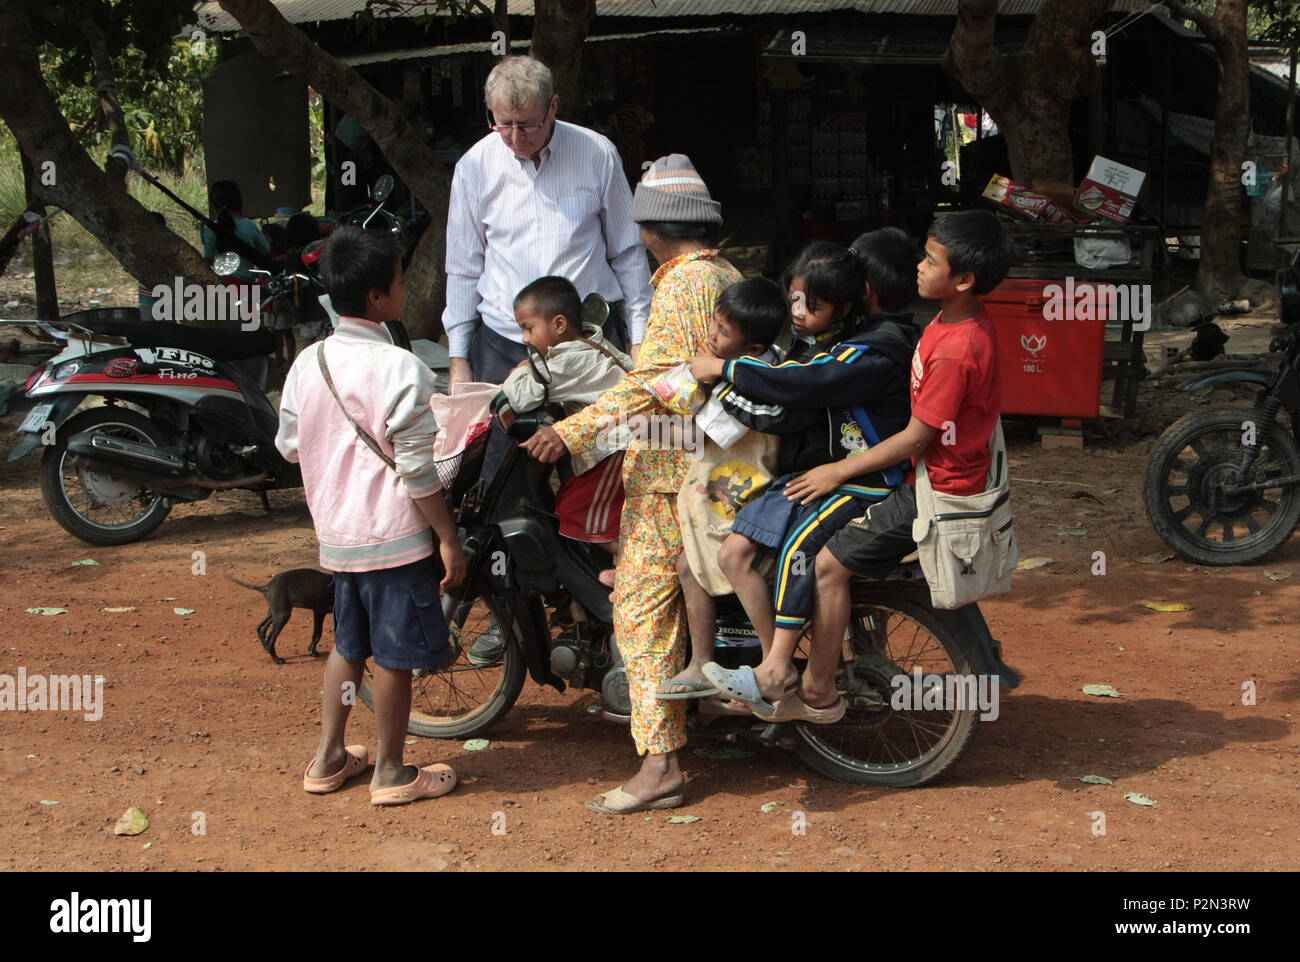 Una moto con sei persone su porta i bambini a casa da scuola. Sig. Conor Gilligan, uno dei coltivatori di fondo, guarda a. A scuola di risma, in Cambogia. Foto Stock